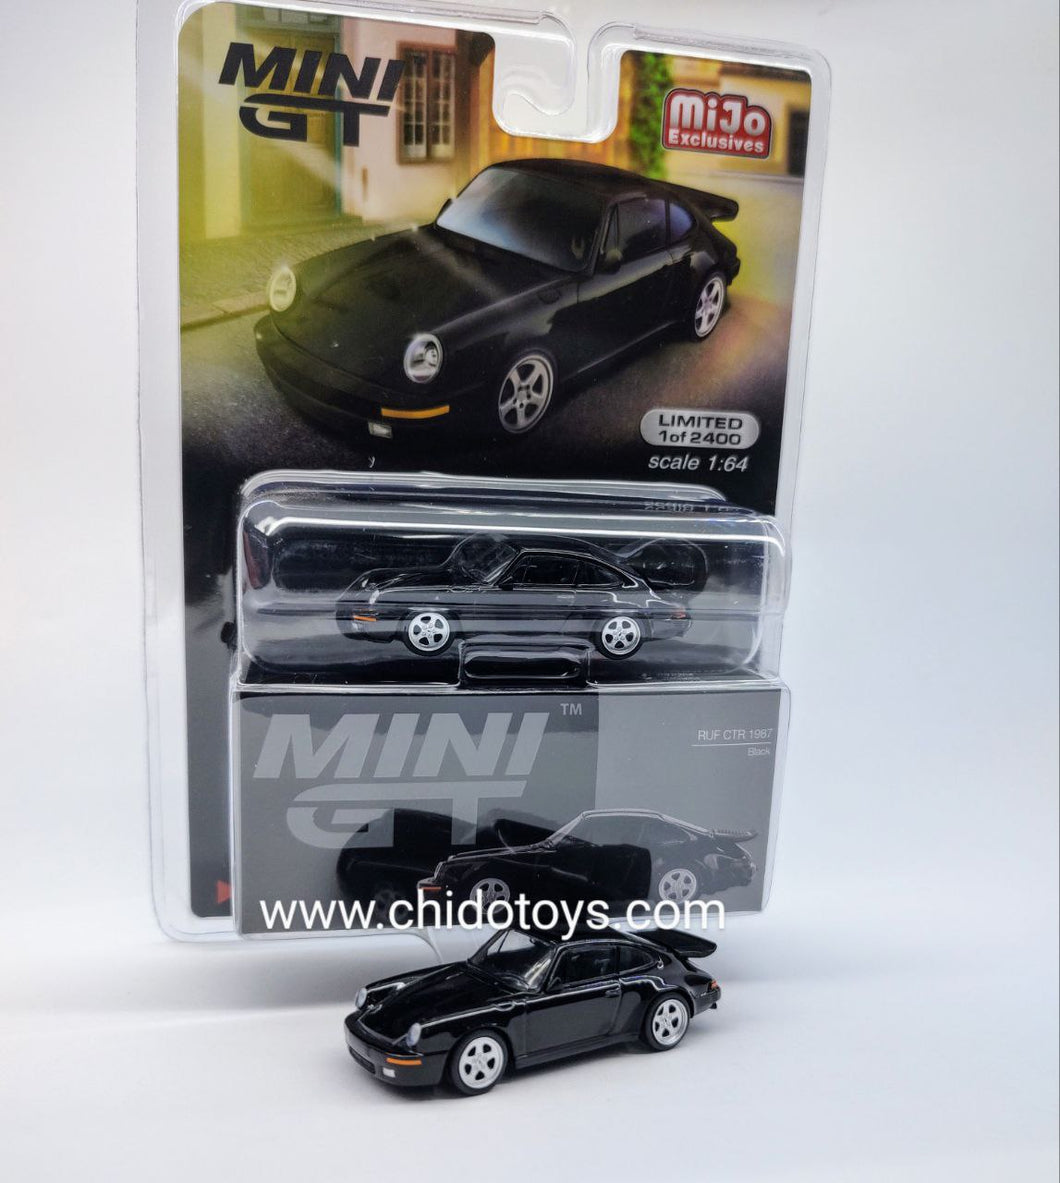 Auto a escala marca Mini GT, Modelo RUF CTR 1987 Black